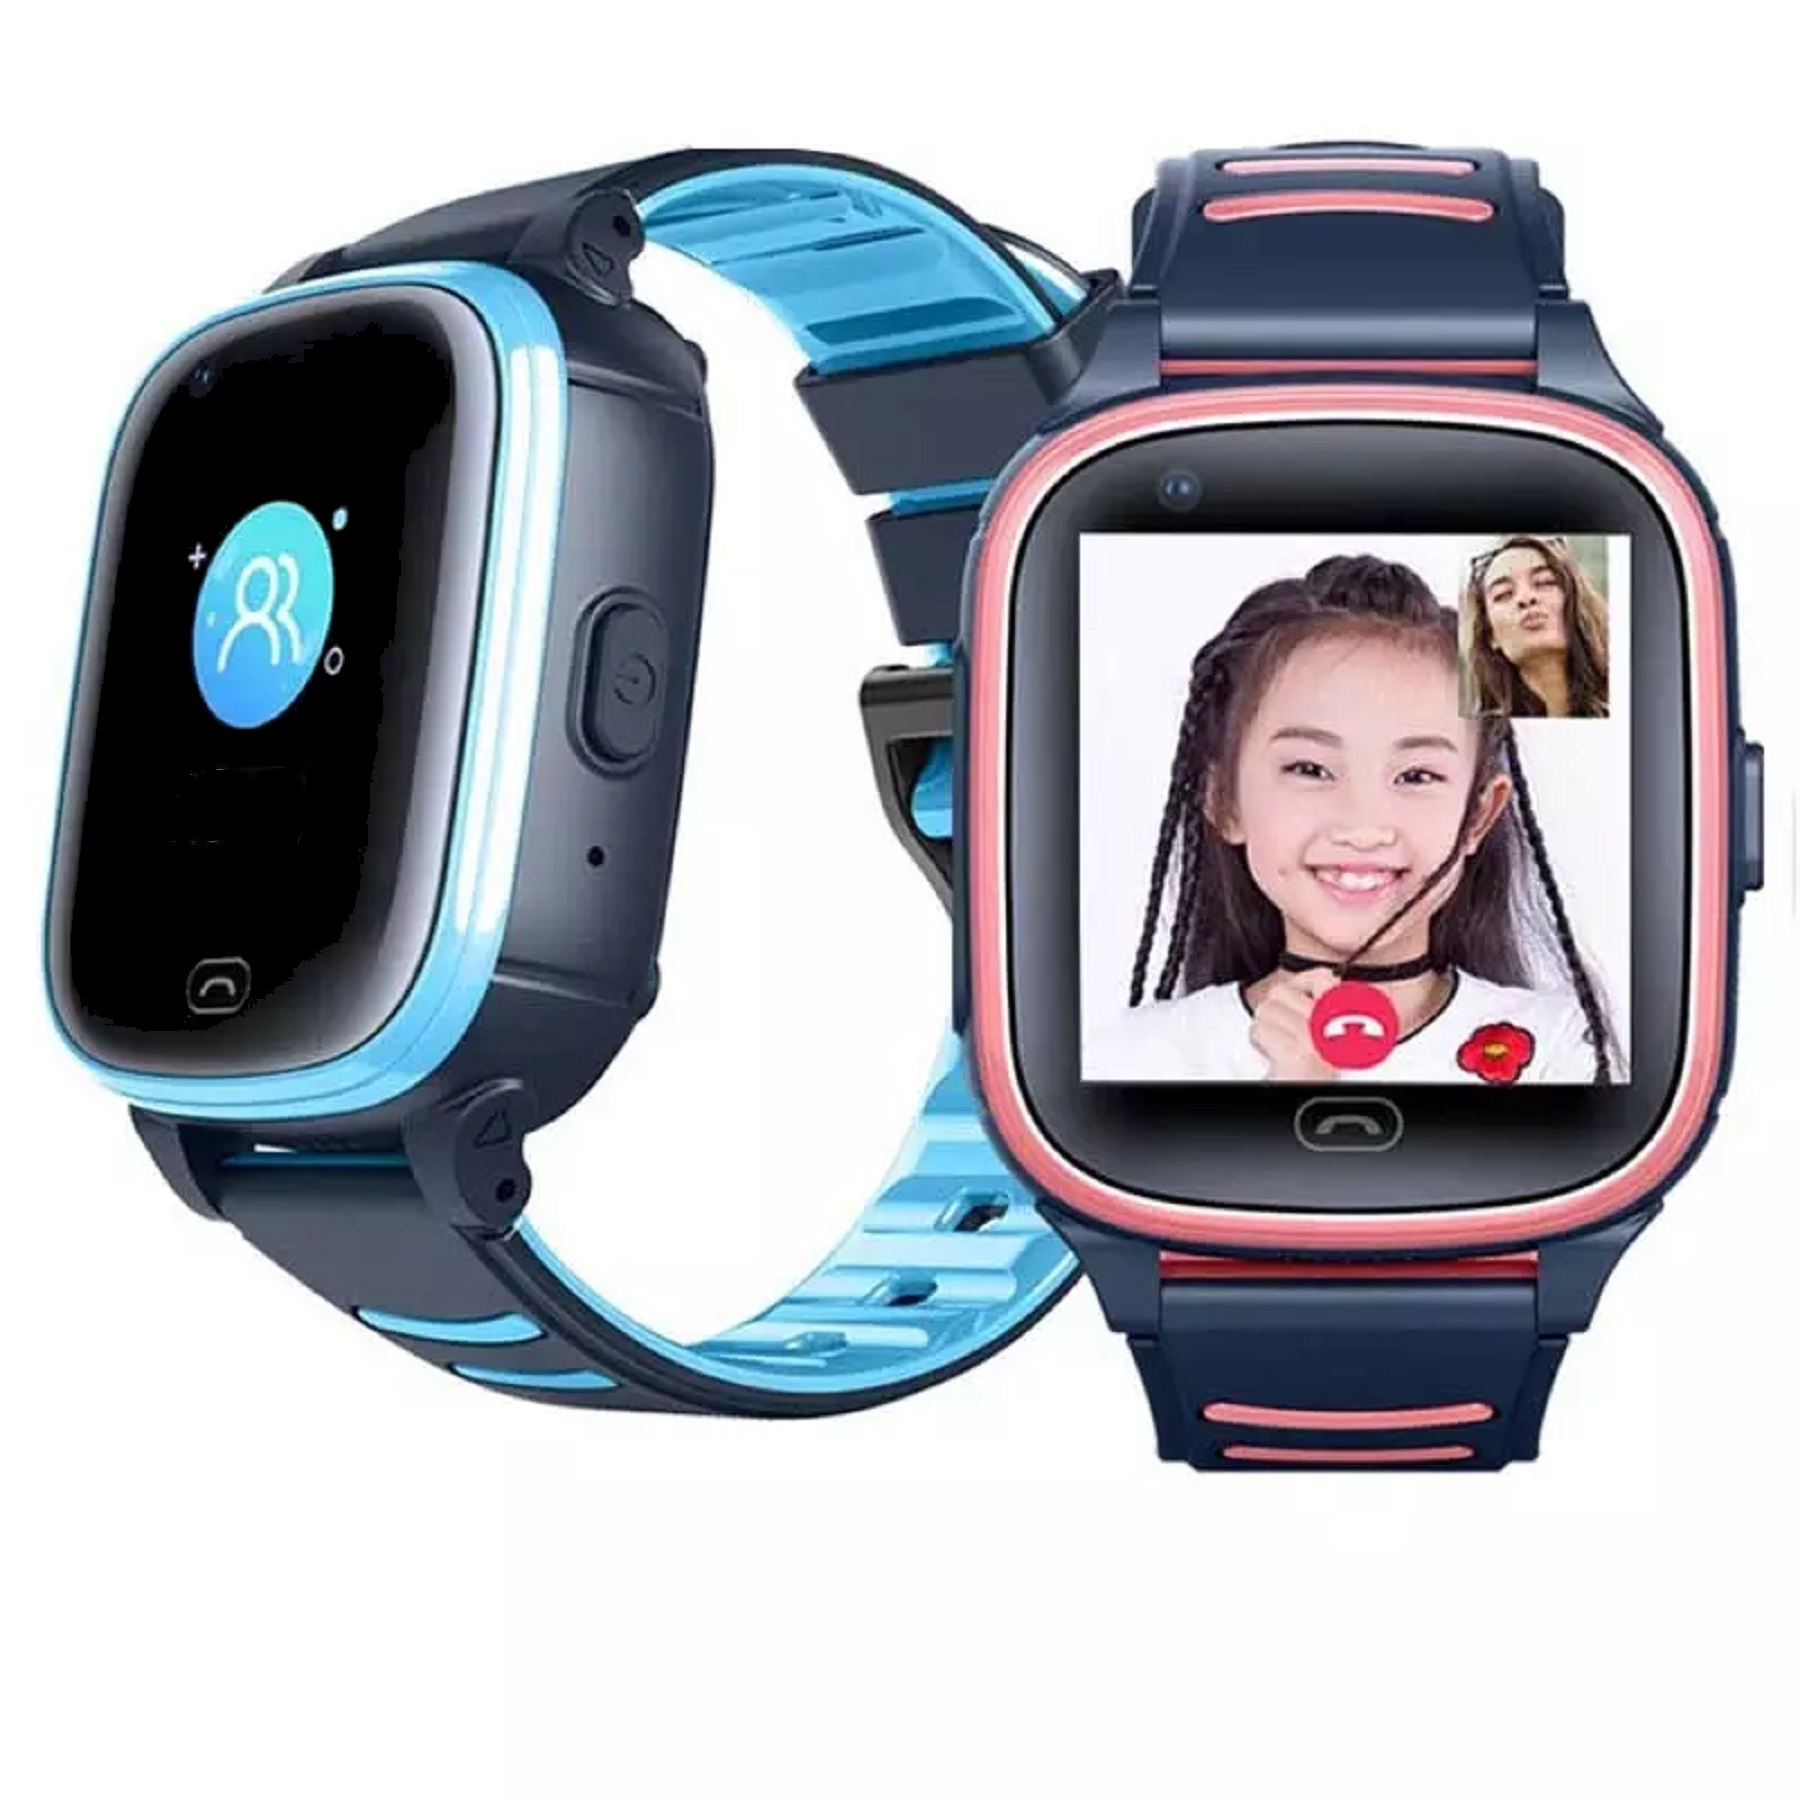 KAREN M Pink Silicone, A80 Smartwatch